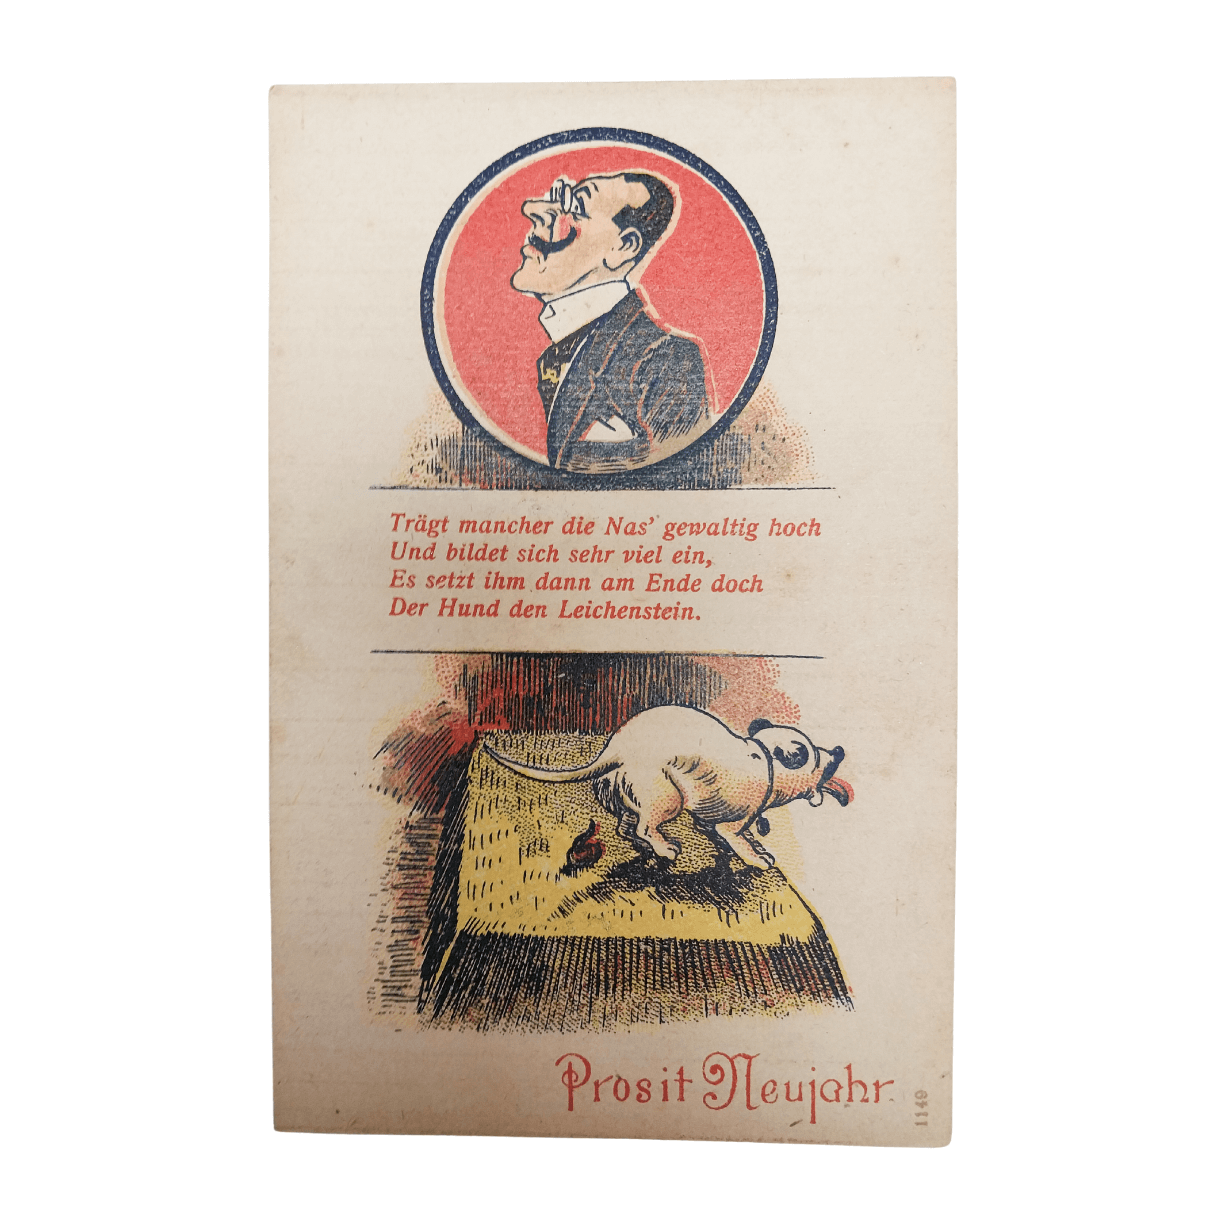 Cartão Postal Antigo Alemão de Ano Novo (Prosit Neujahr) - Cachorro